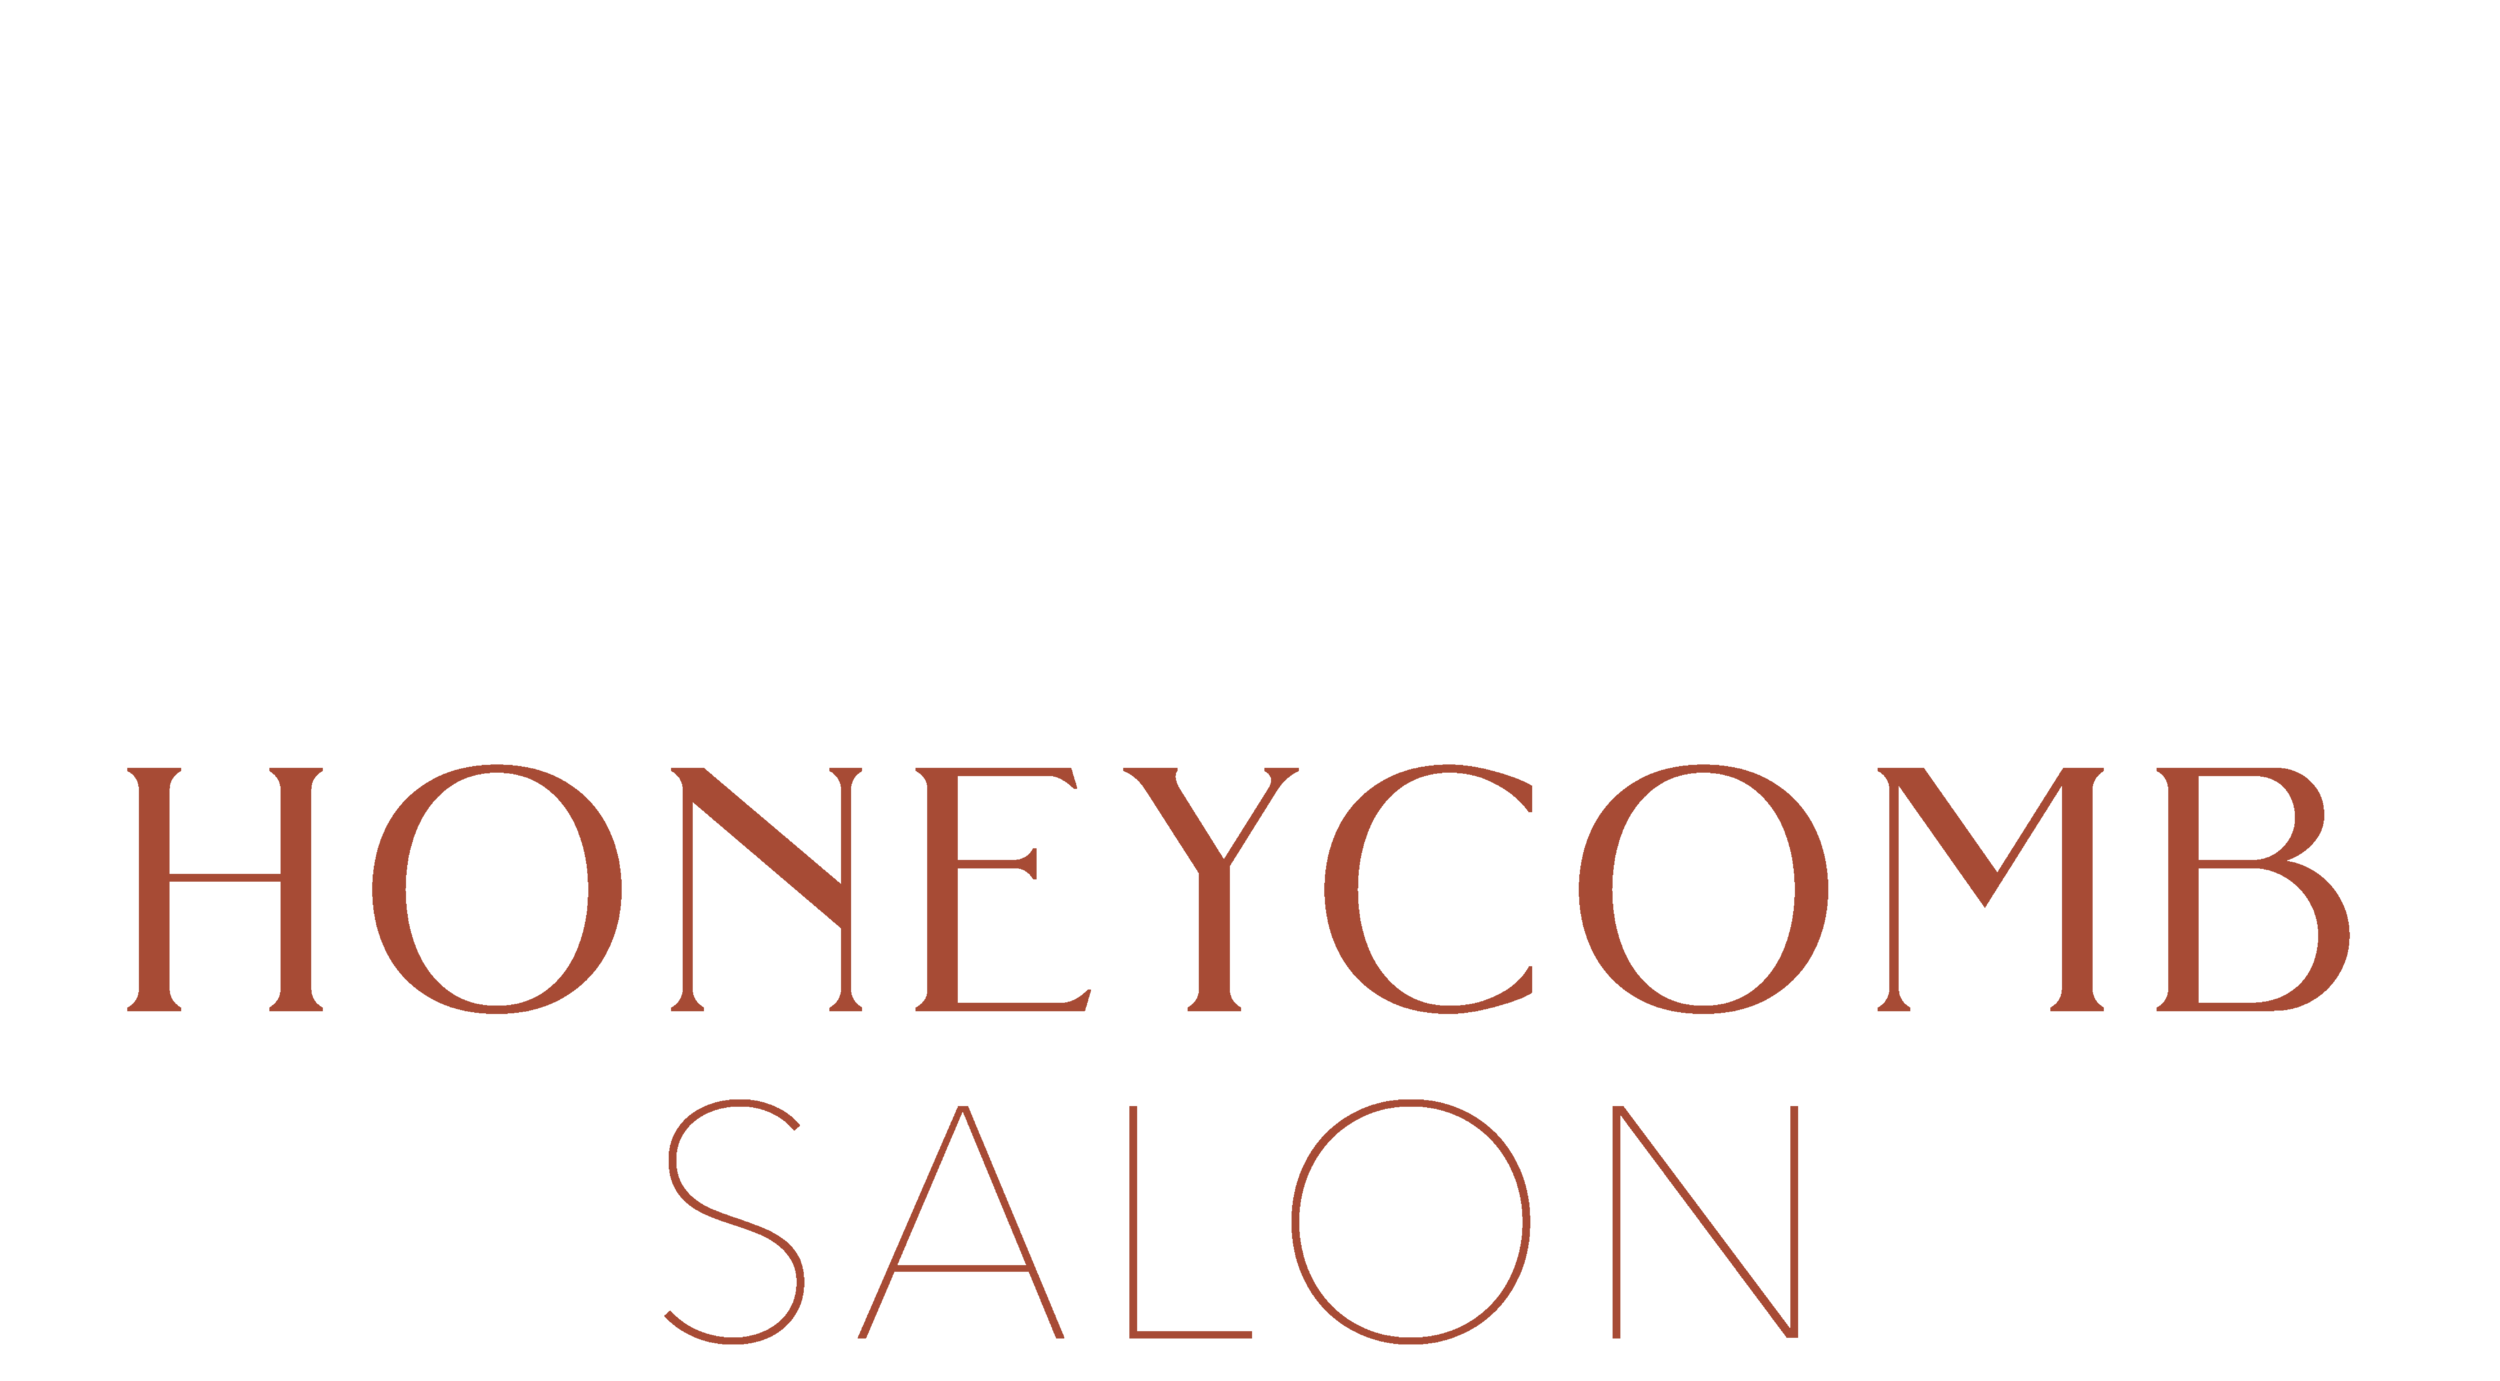 Honeycomb Salon - Louisville, KY